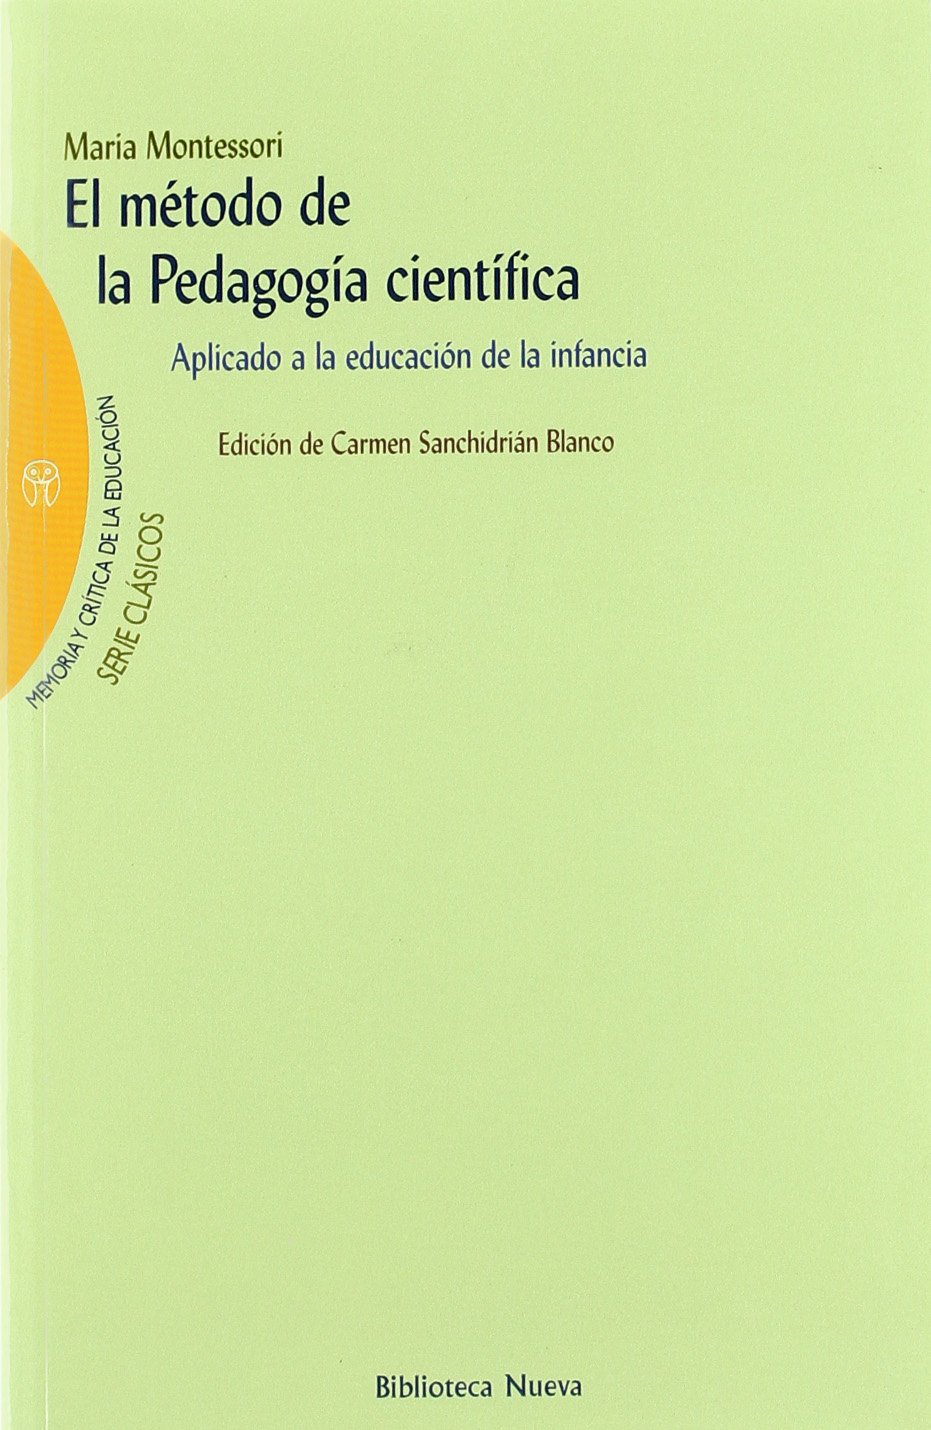 El método de la pedagogía científica de la Dra. Maria Montessori.